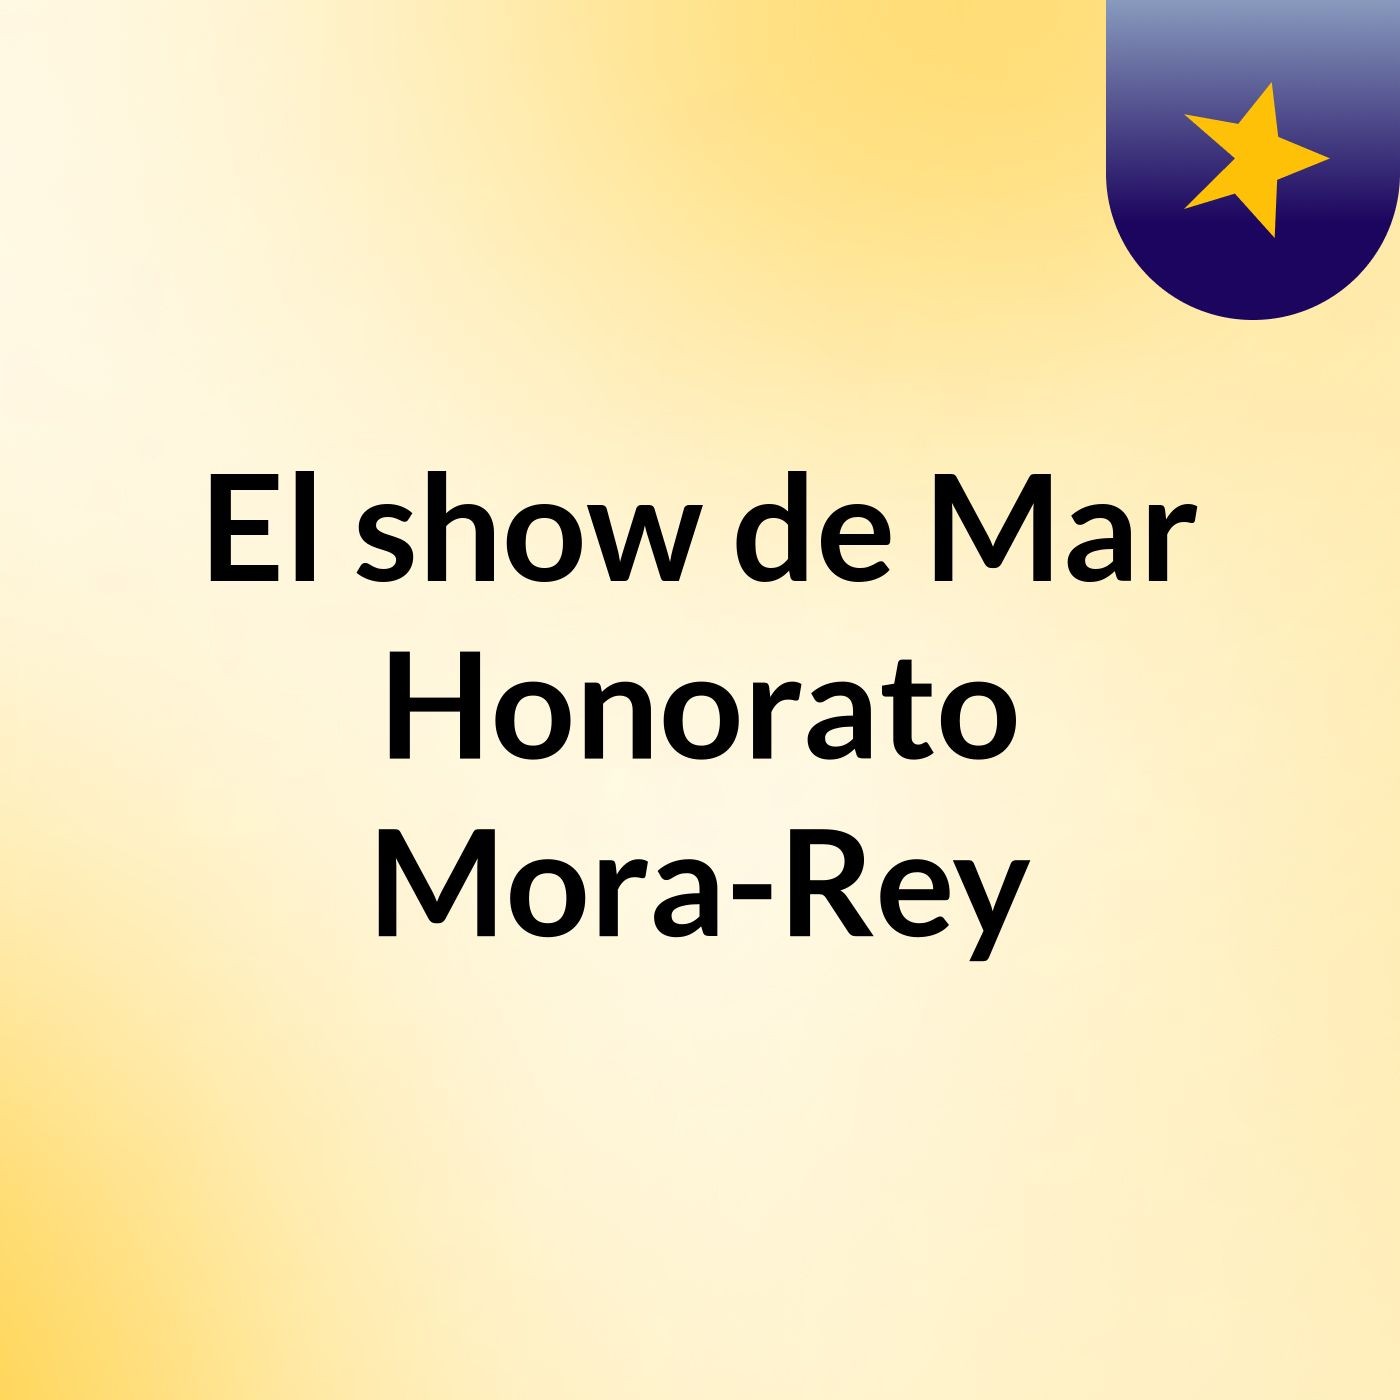 El show de Mar Honorato Mora-Rey